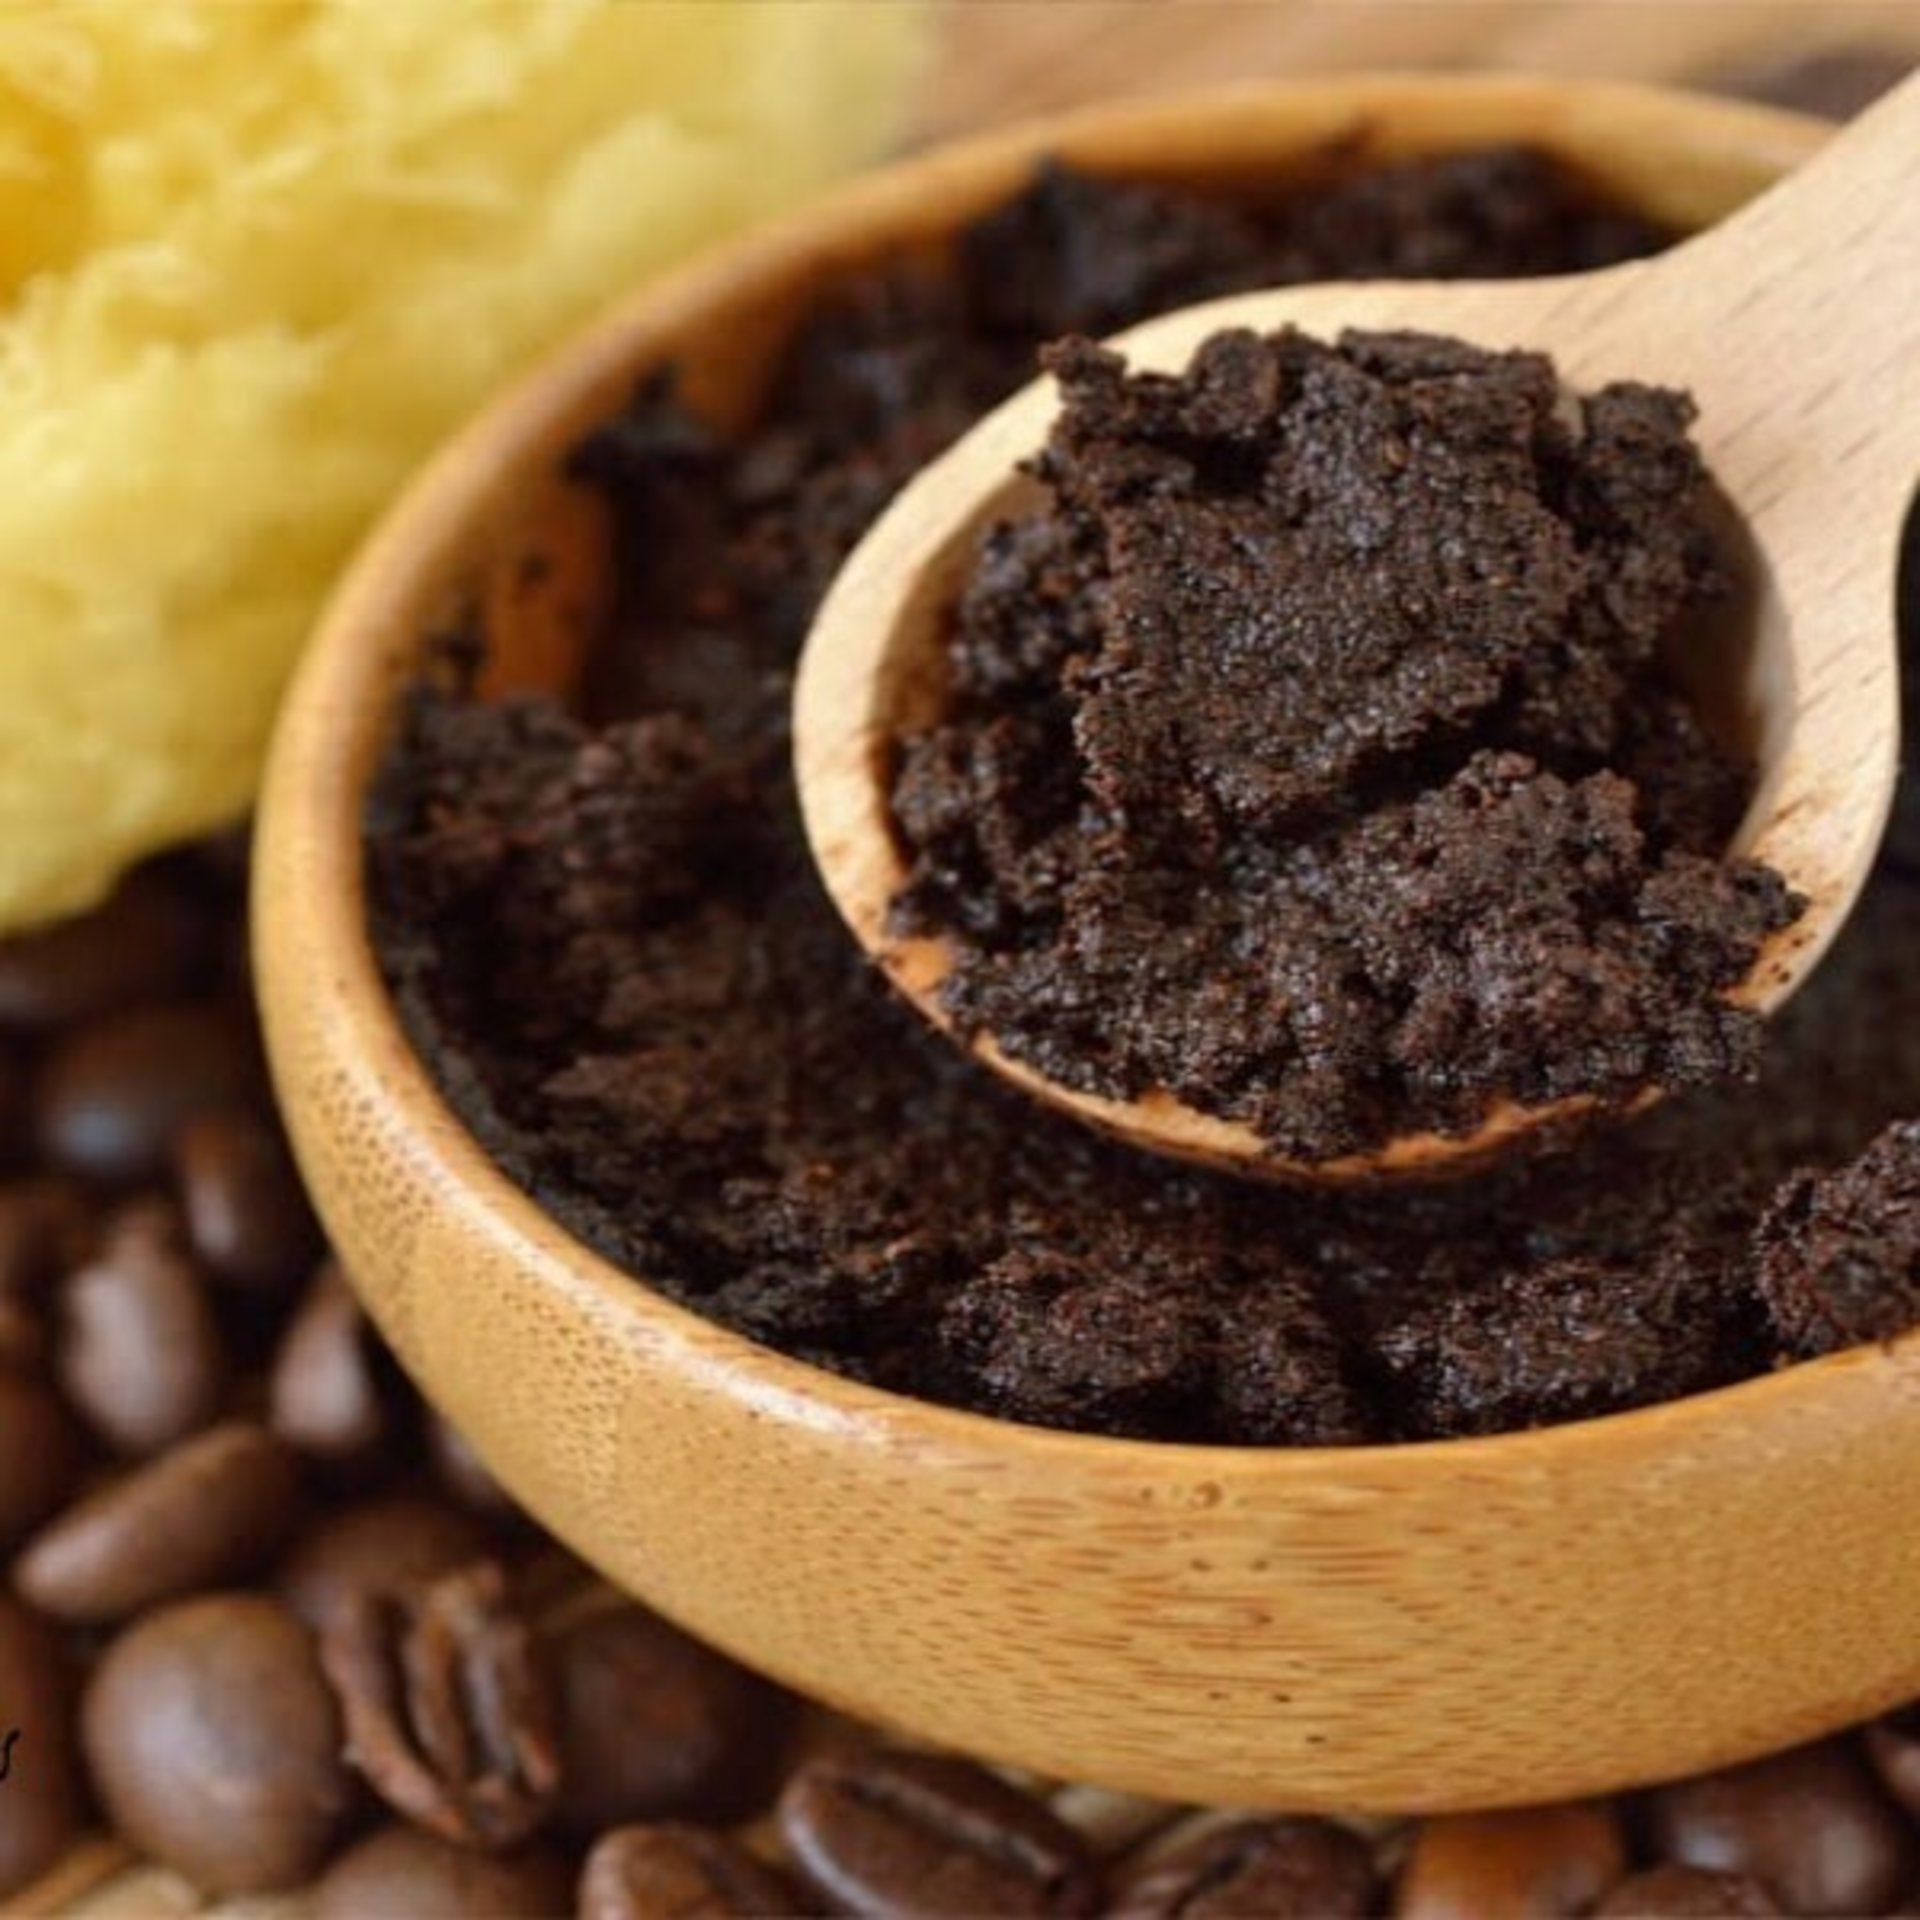 Coffee Scrub Caramel Cappuccino - Coffee Body Scrub, Body Scrub, Exfoliating Scrub, Organic Body Scrub